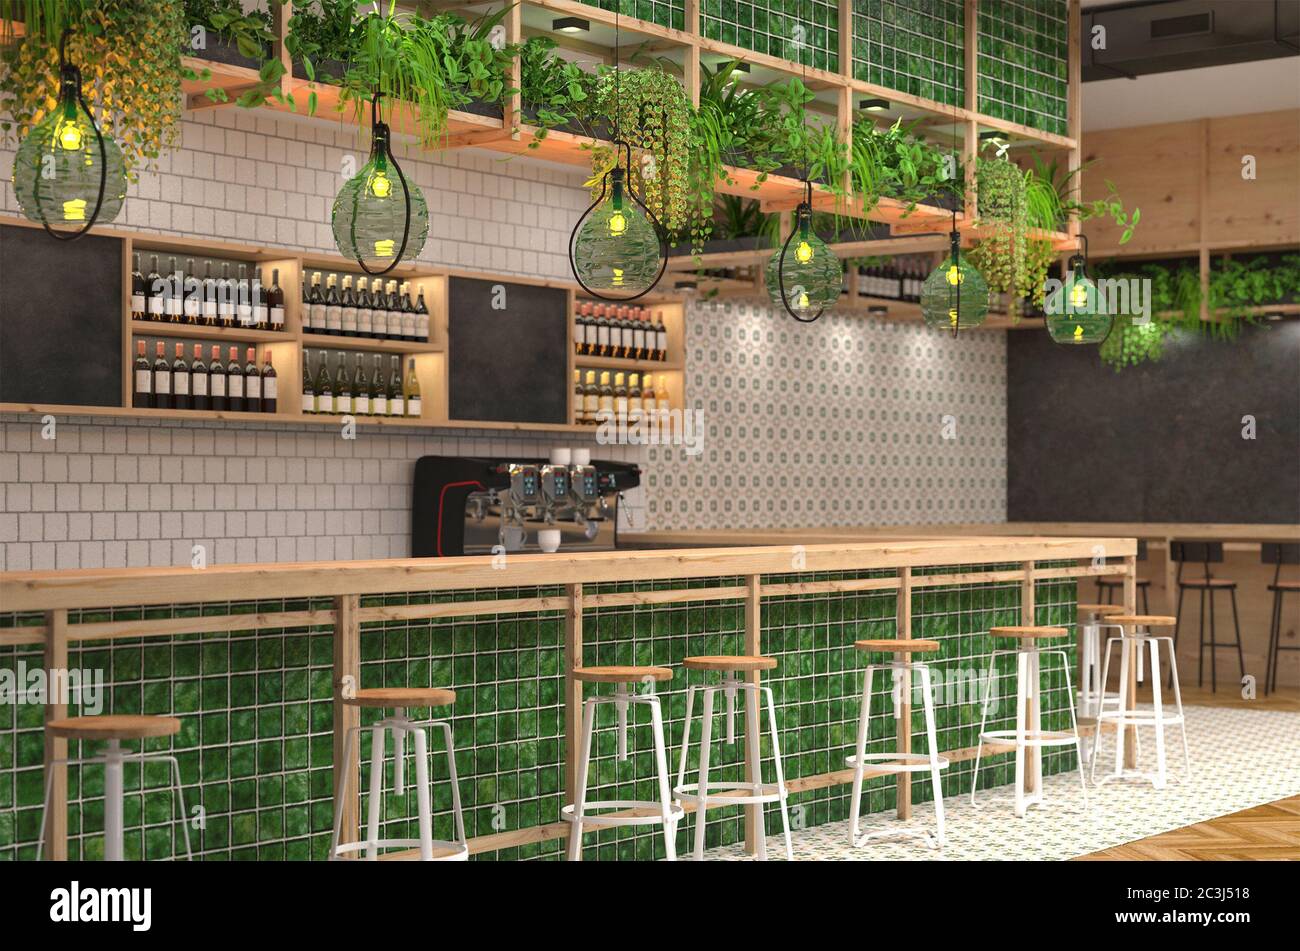 Modernes Design der Bar im Loft-Stil mit grünen Farben. 3D-Visualisierung des Innenraums eines Cafés mit Barcounter. Unscharfer Hintergrund mit dep Stockfoto